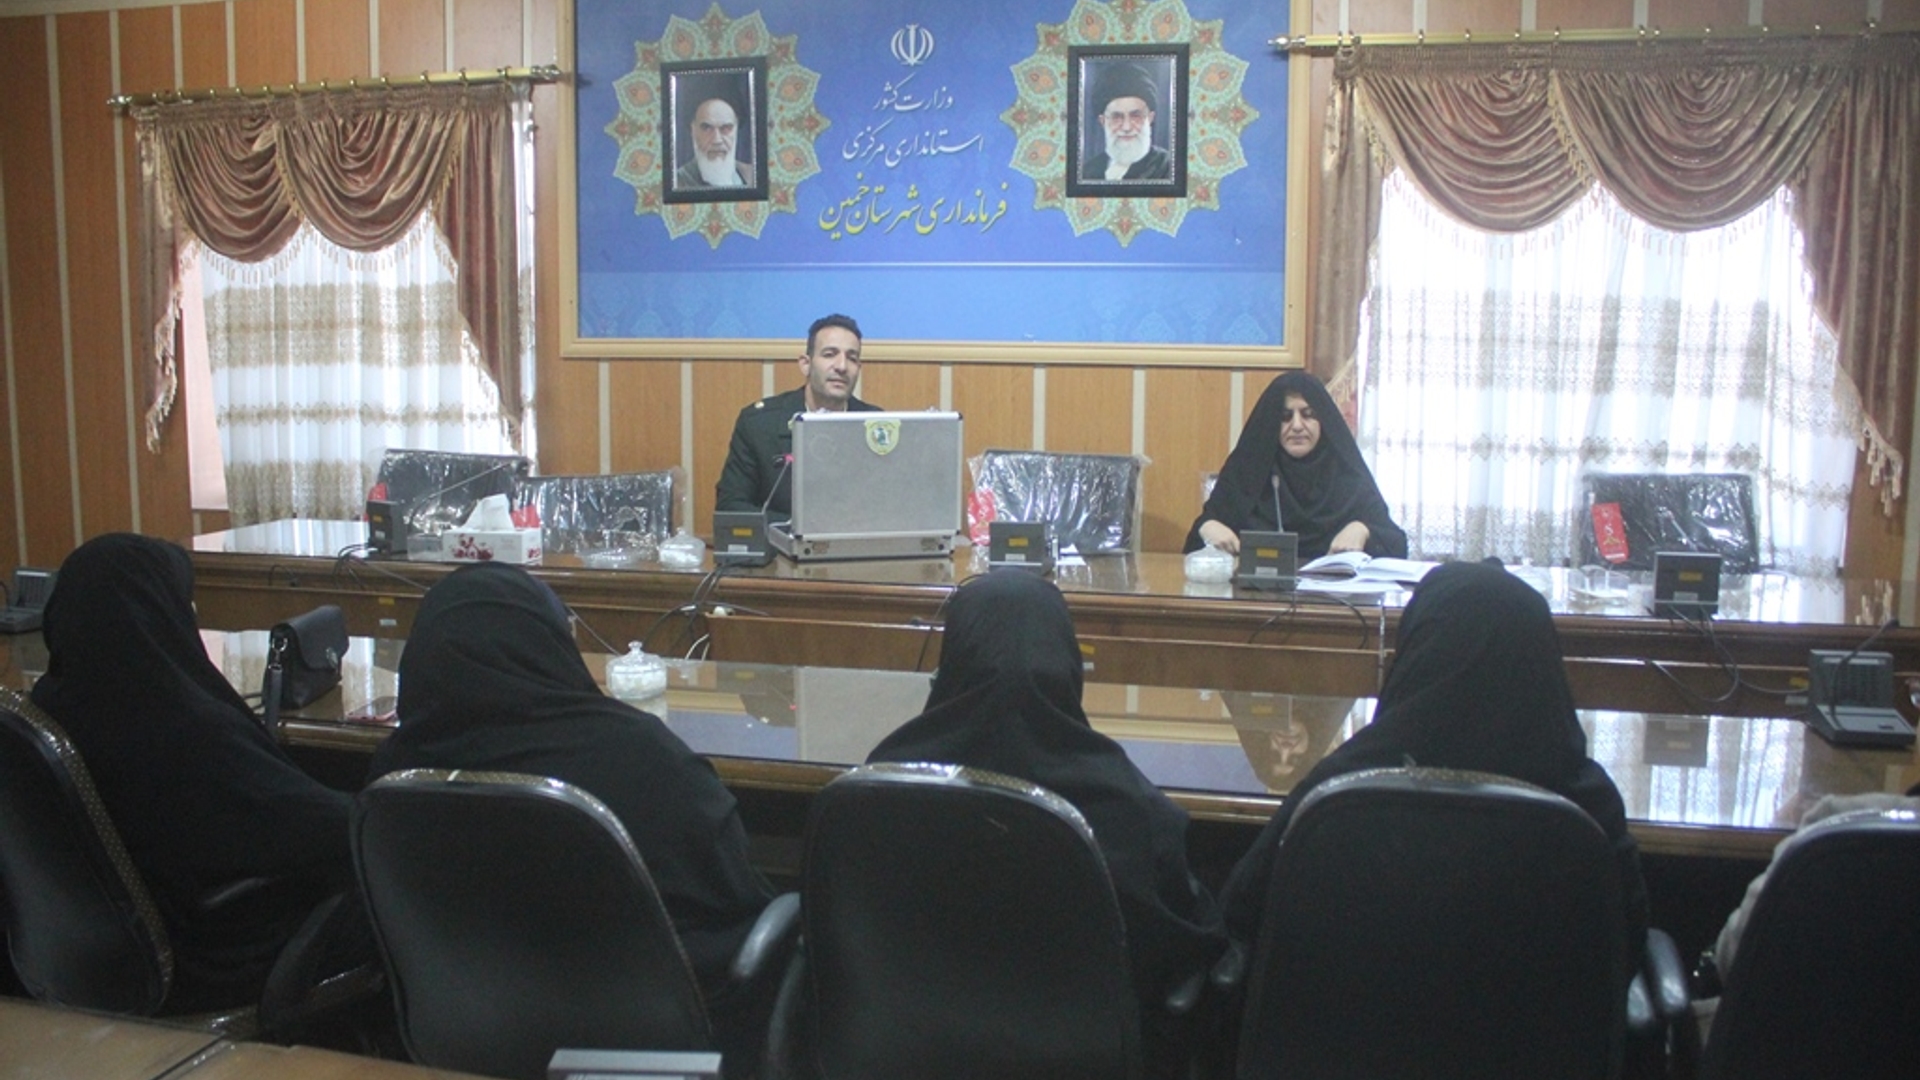 جلسه آموزشی پیشگیری از اعتیاد به مواد مخدر ( گل ) در شهرستان خمین برگزار شد